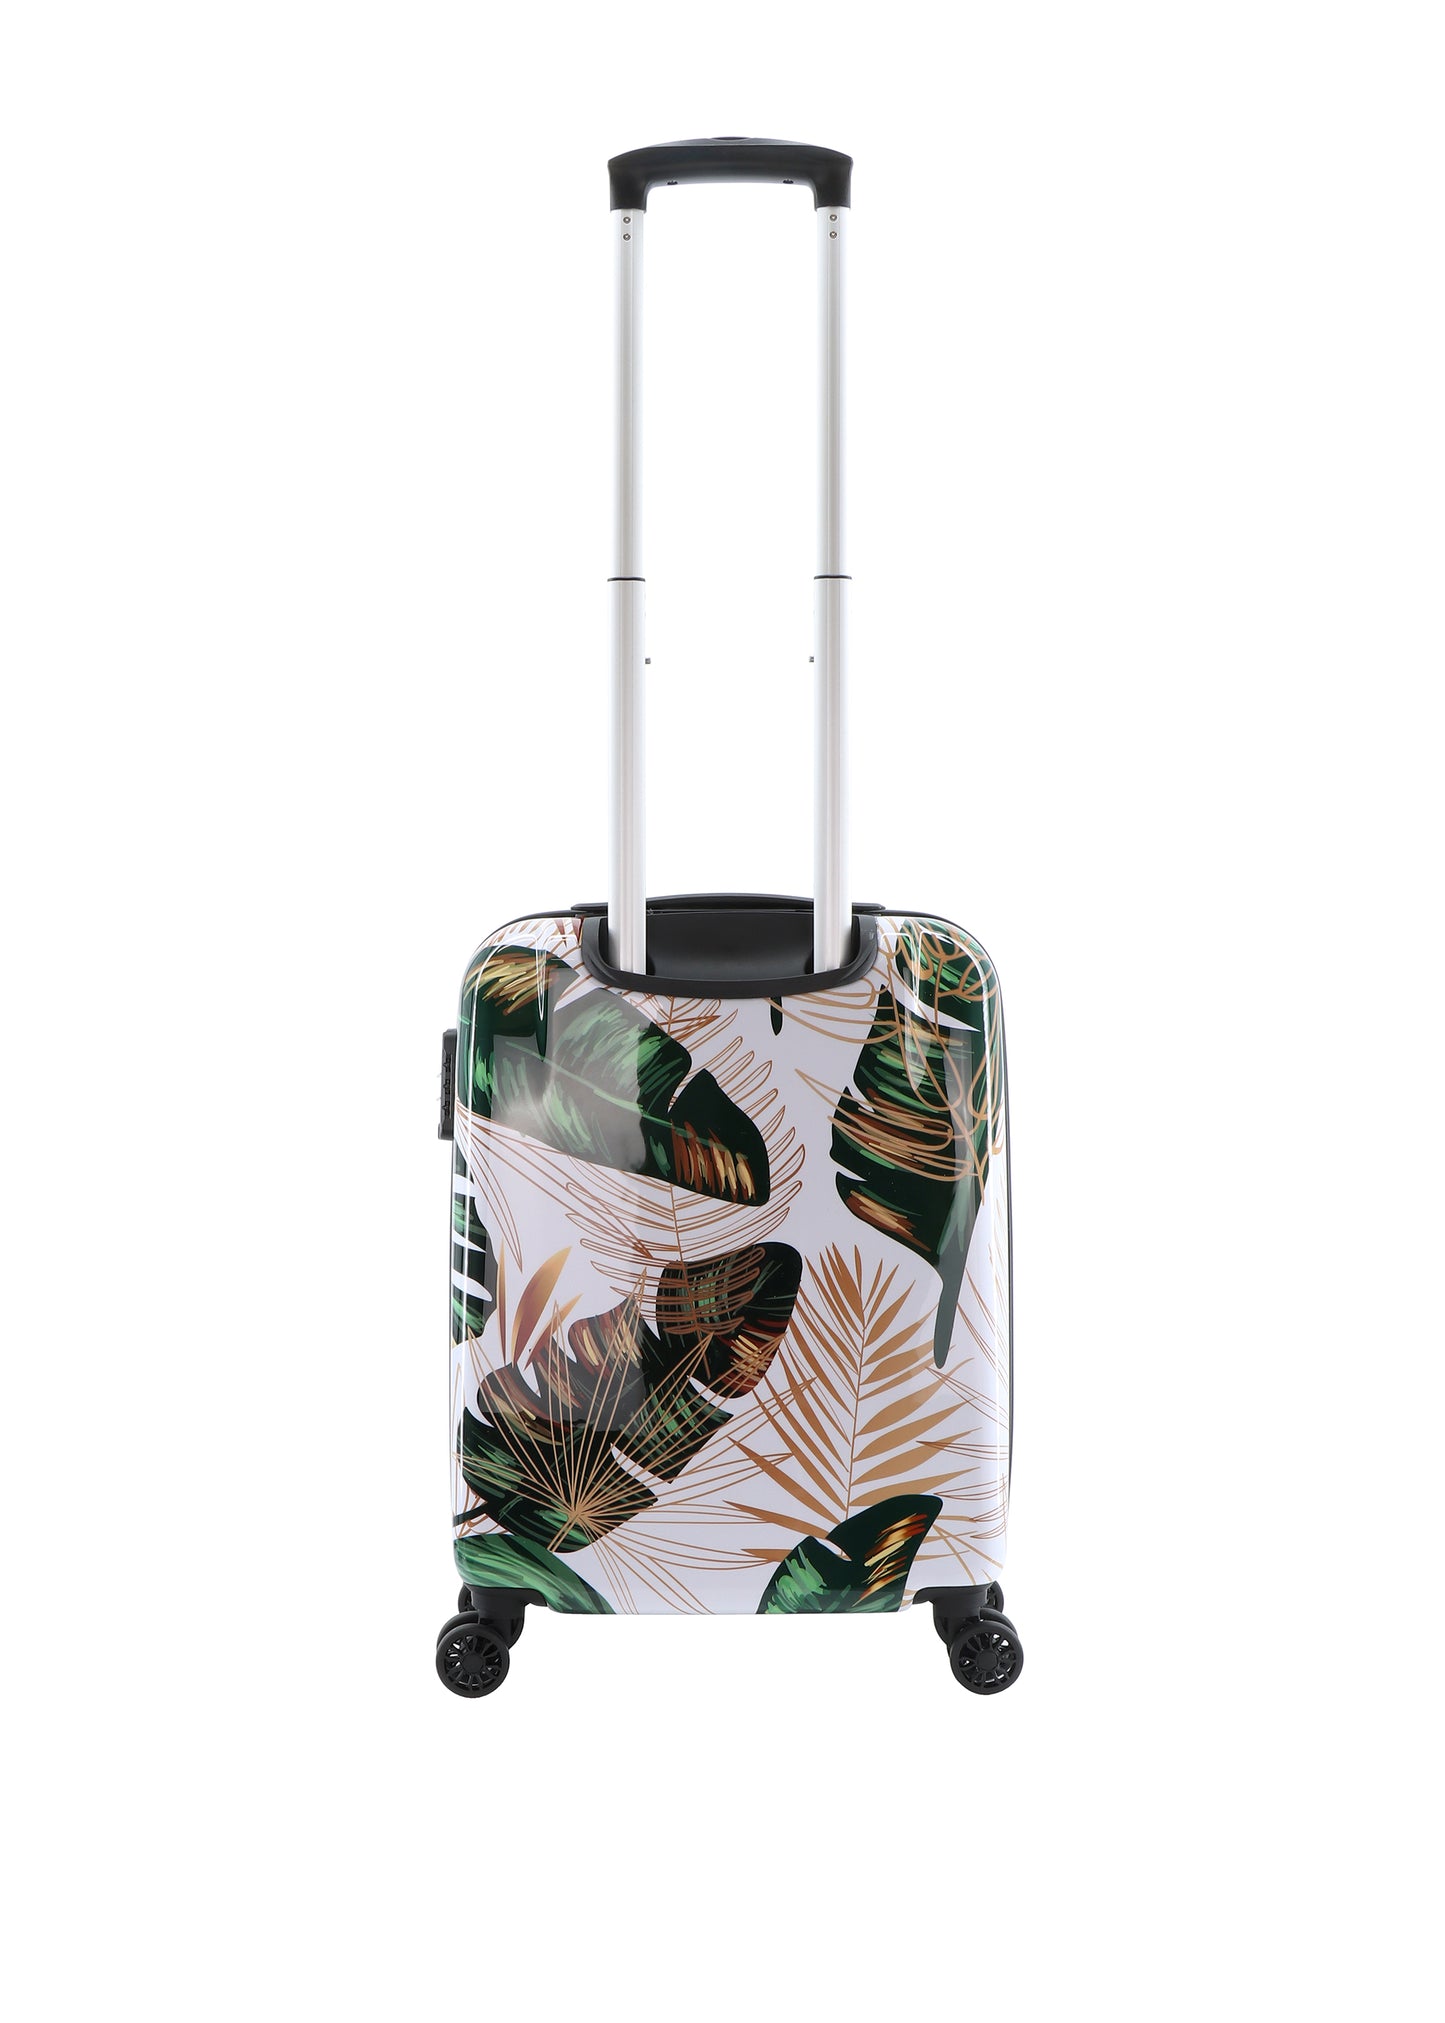 Valise rigide pour bagage à main Saxoline / Trolley / Valise de voyage - 55 cm (Petite) - Imprimé forêt vierge